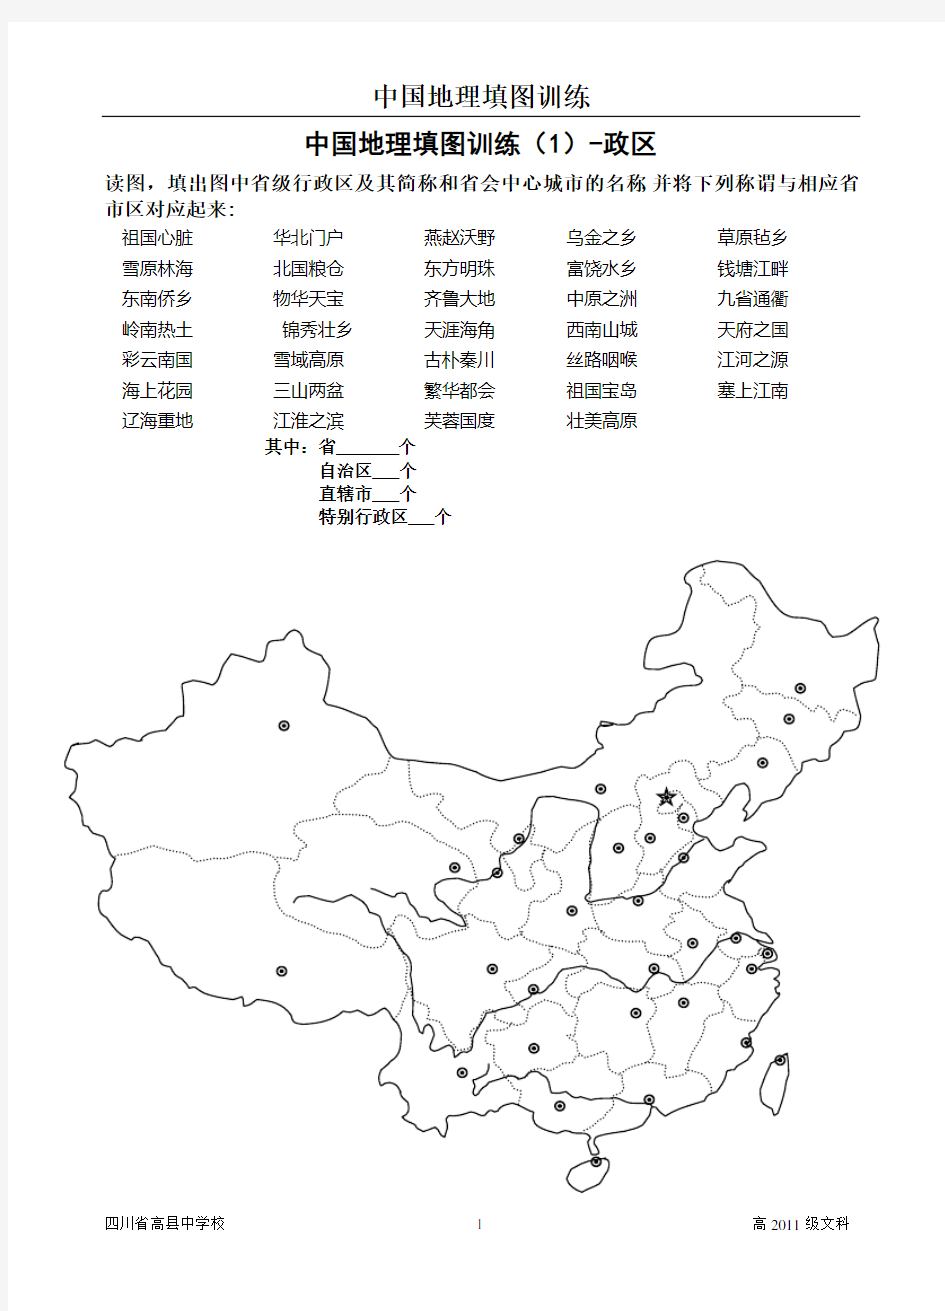 中国地理填图训练